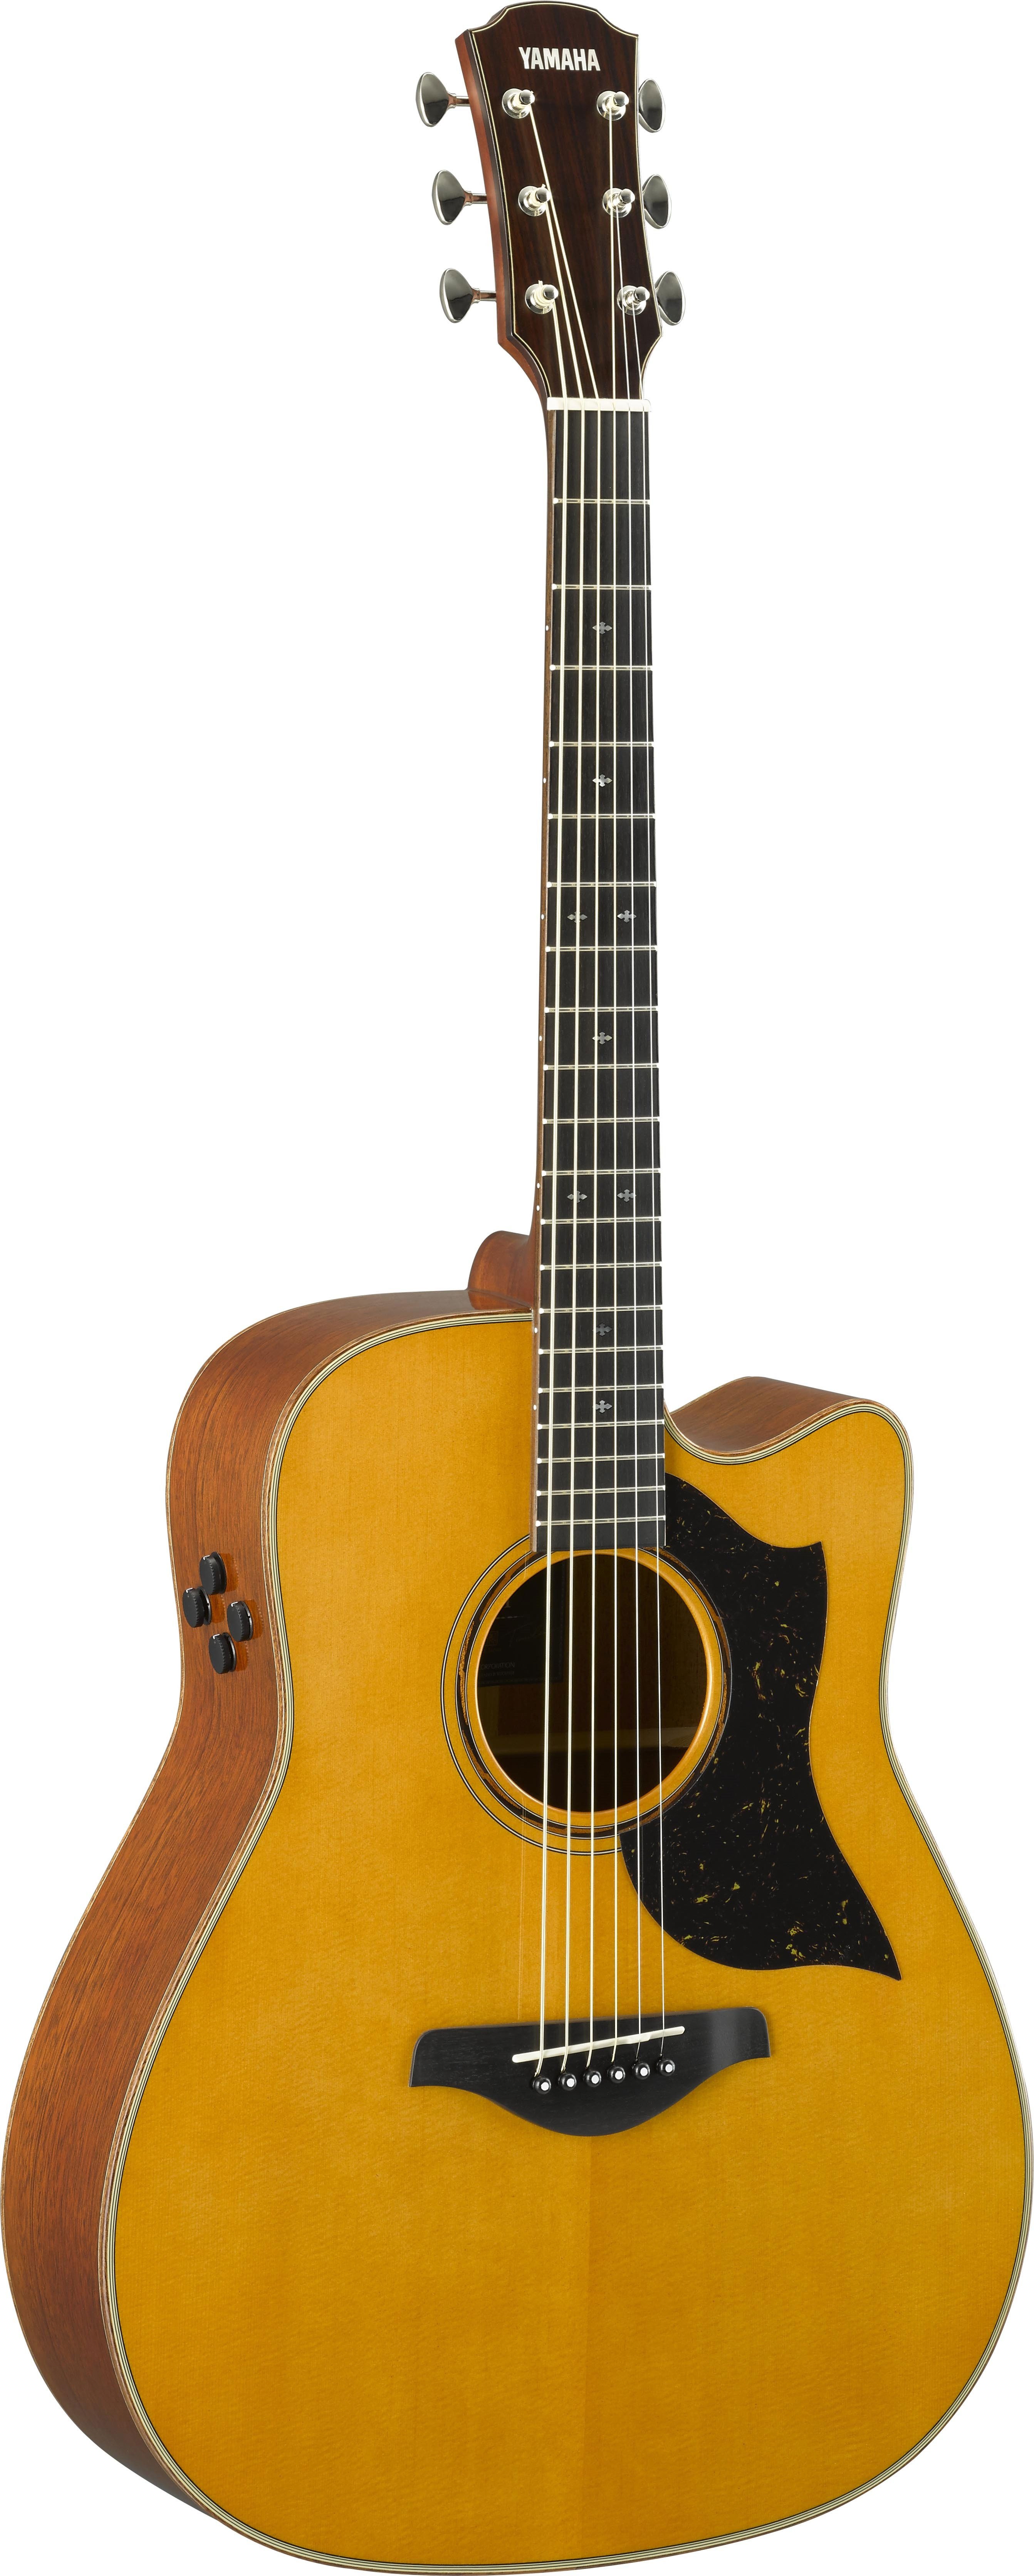 Đàn Guitar Acoustic Yamaha A5M Vintage Natural (Hàng Chính Hãng)